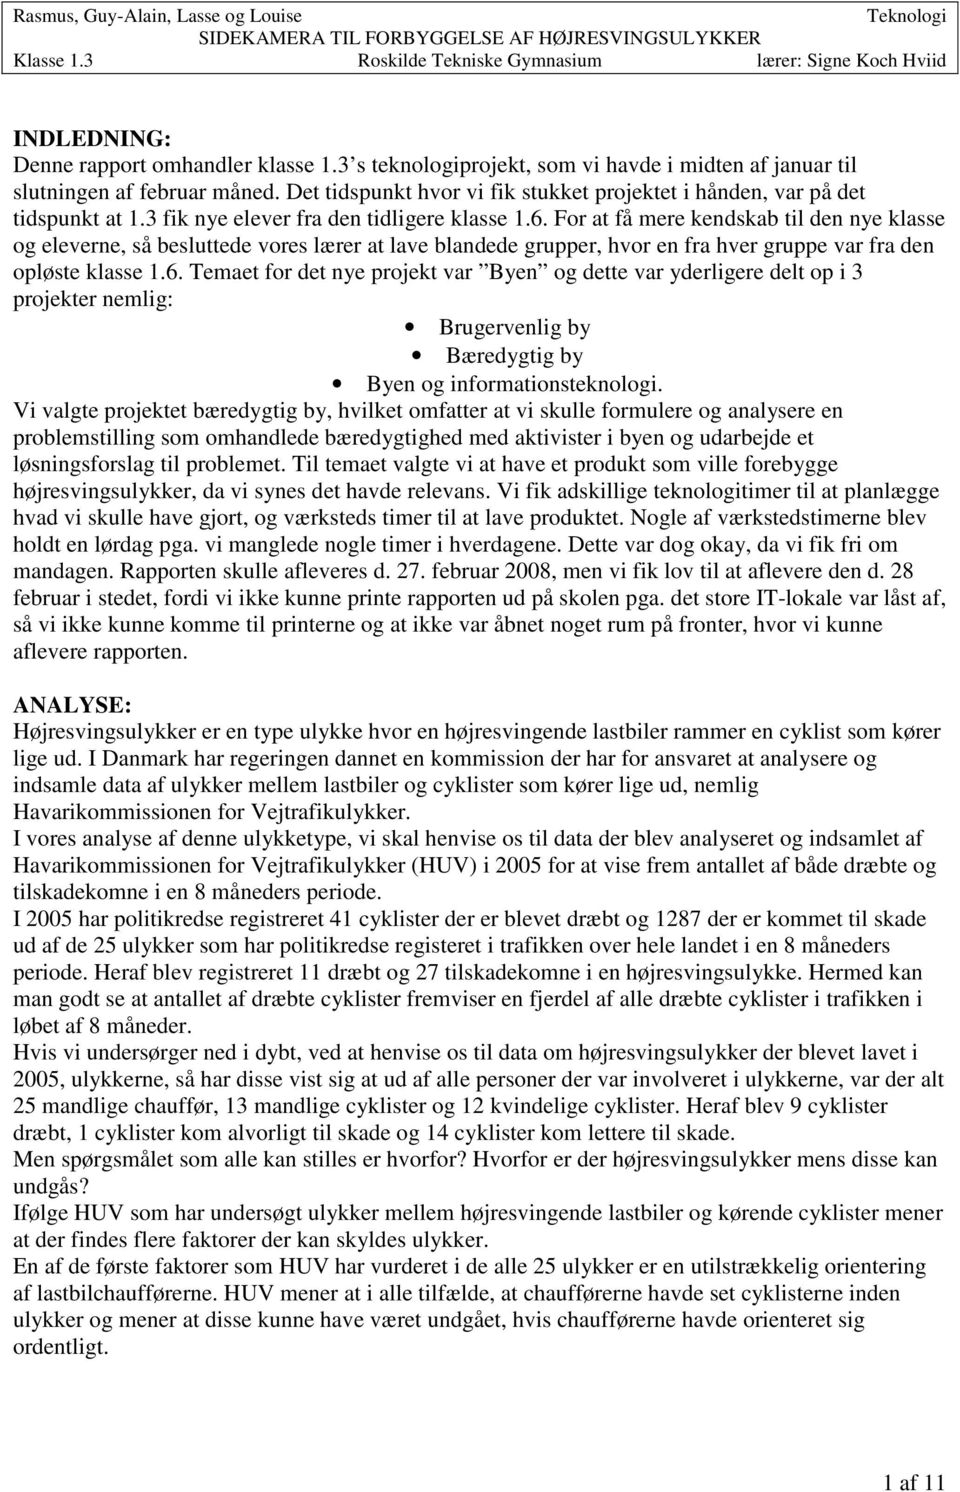 SIDEKAMERA TIL FOREBYGGELSE AF HØJRESVINGSULYKKER. Teknologi - PDF Gratis download